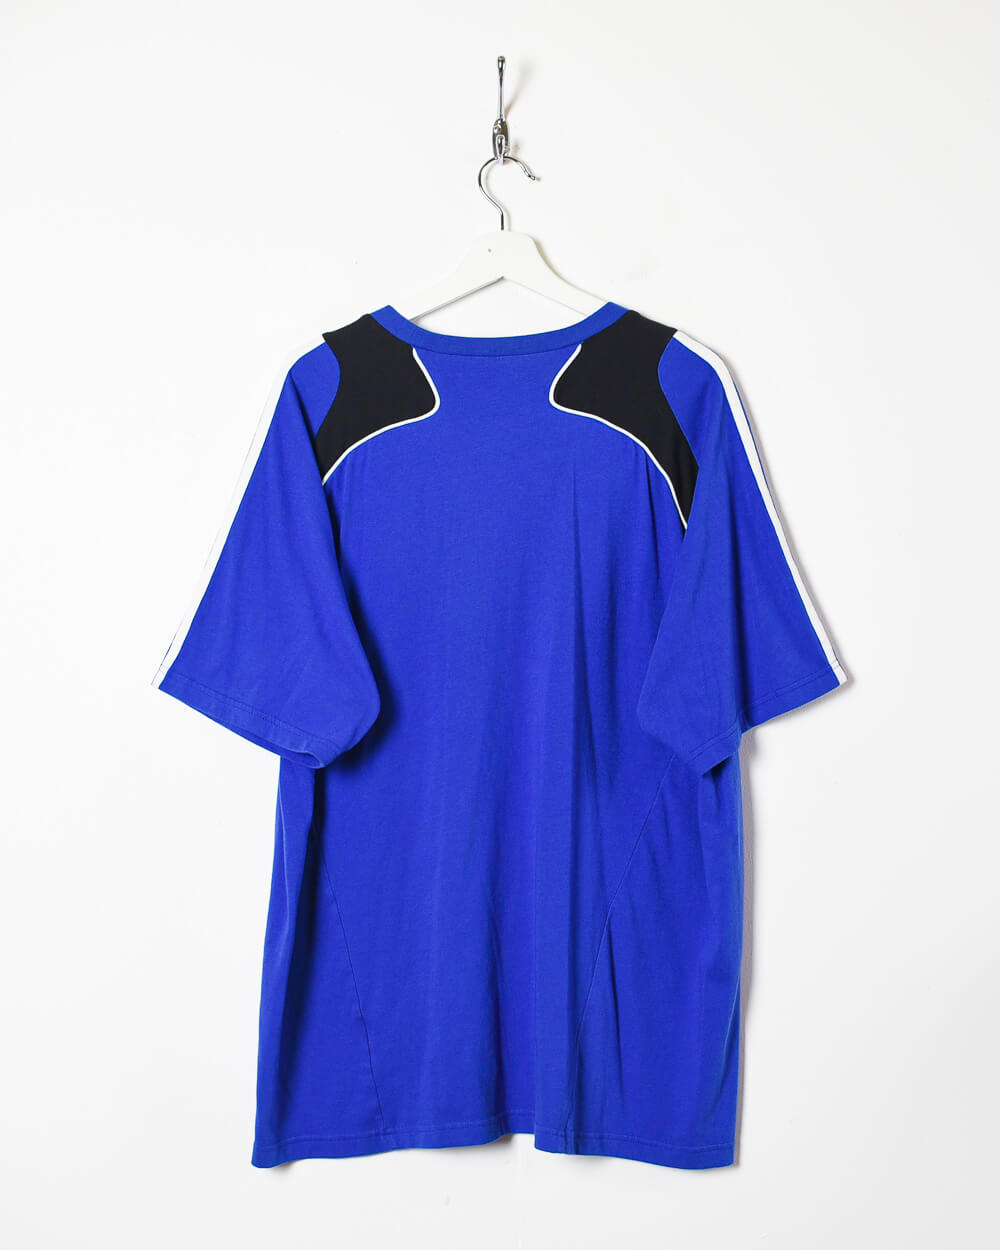 Blue Adidas  Chelsea FC Training Shirt - X-Large